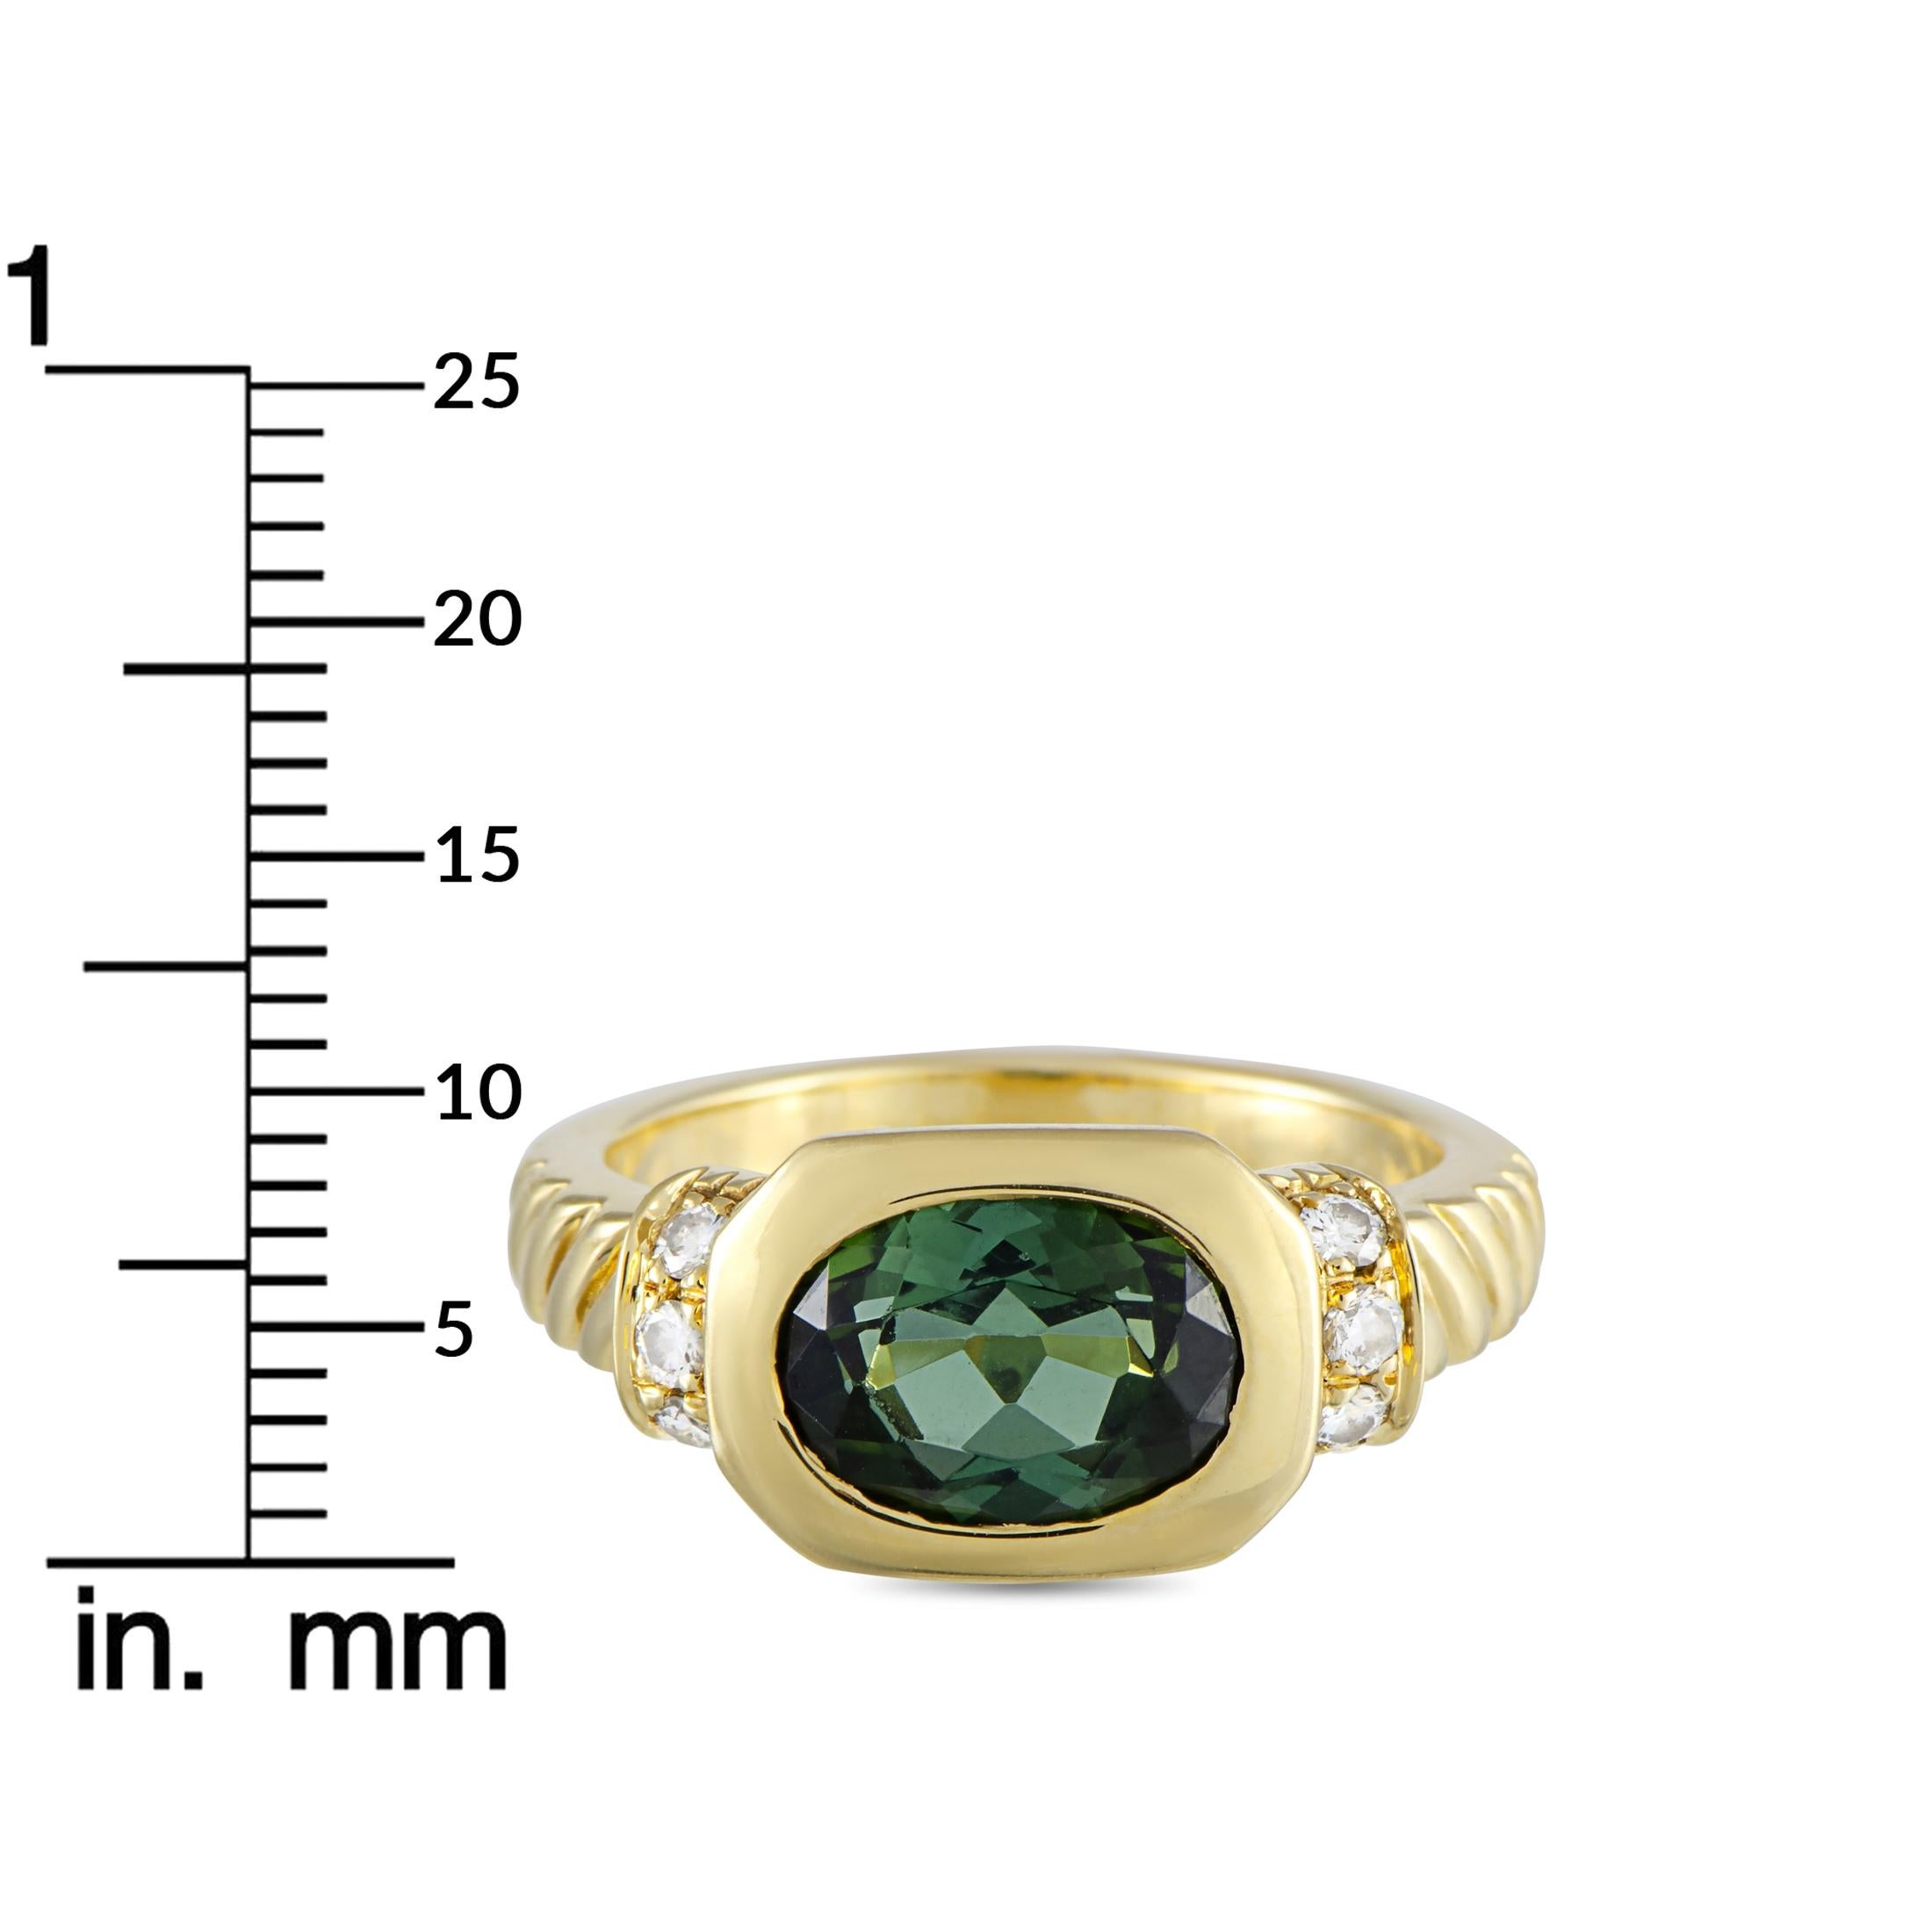 Bvlgari 18 Karat Yellow Gold Diamond and Tourmaline Ring 2